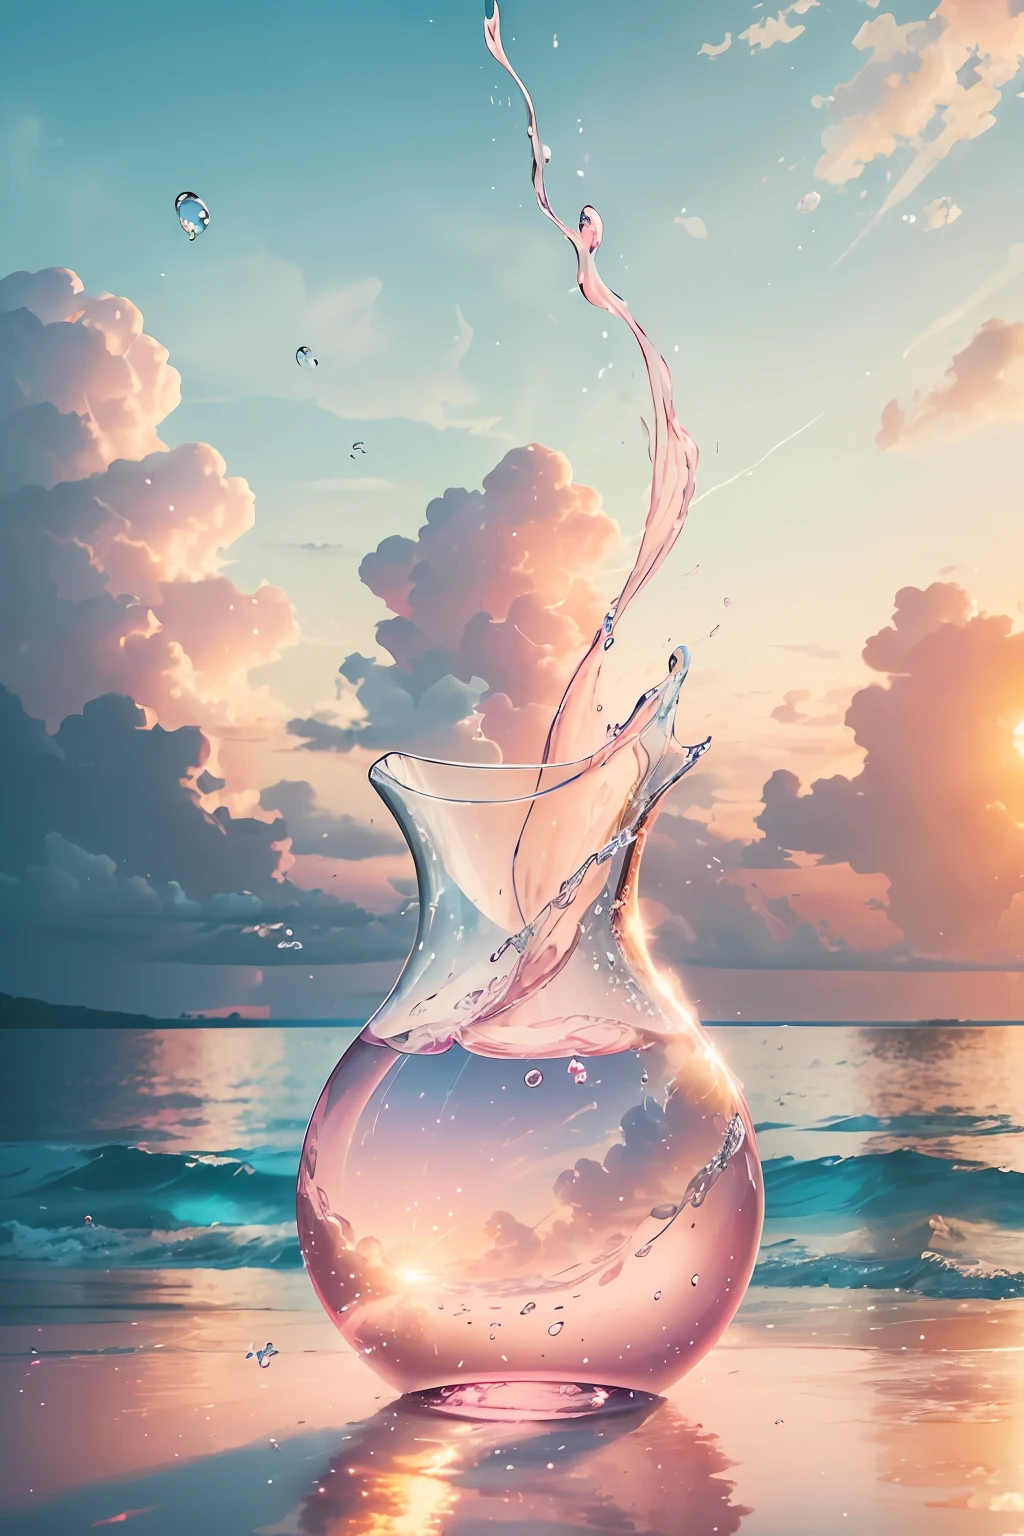 Создайте 4K 9:16 изображений, на которых изображен потрясающий восход солнца на тропическом пляже, с нежными волнами и пальмами вдоль побережья. Цветовая палитра должна быть яркой и передавать ощущение обновления и позитивной энергии..  Представьте себе вазу из прозрачного стекла, наполненную нежно-розовым облаком. Облако состоит из крошечных пузырьков, каждый из них отражает искру света. Вы можете видеть, что пузыри постоянно движутся, сдвиг и завихрение внутри вазы. Но, несмотря на их эфемерную природу, Они оставляют неизгладимое впечатление на самой вазе. Как свет проникает сквозь розовое облако, Он отбрасывает нежное свечение на стекло, изменение самой его сути. Так же, как пузыри, Моменты радости могут быть мимолетными и временными, Но впечатление, которое они оставляют на вашей душе, похоже на нежно-розовое облако, освещая само ваше существо и изменяя вас навсегда.